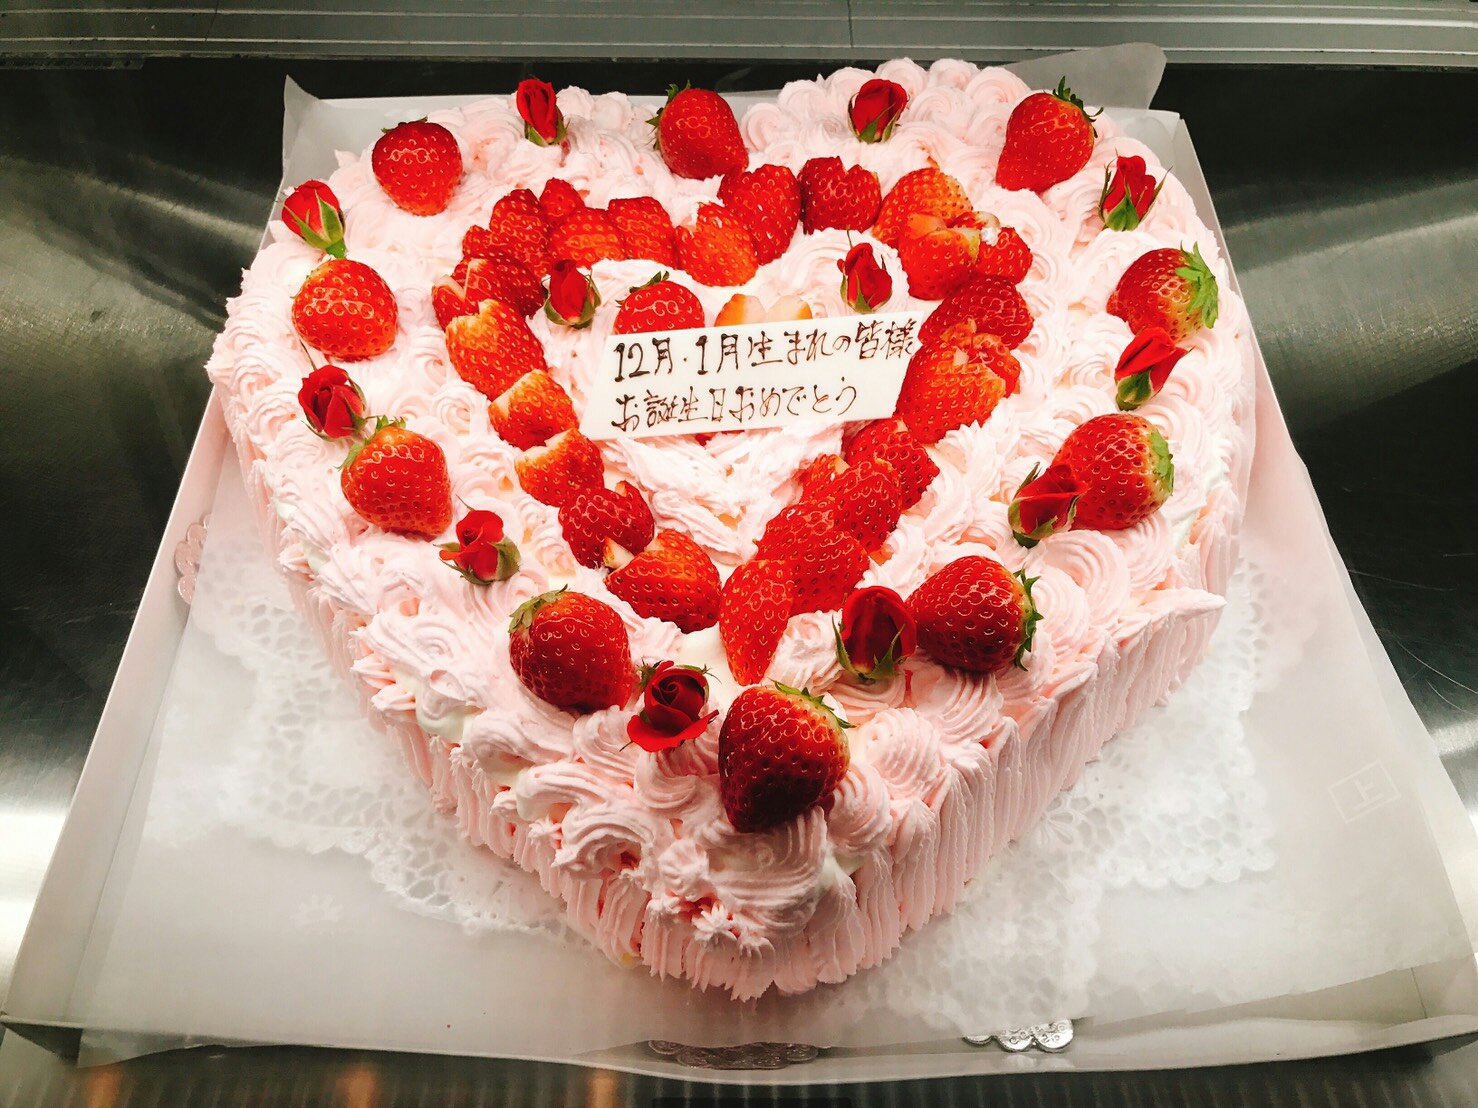 ハートのケーキ 17 01 26 中野屋菓子舗 福島市 豆大福 ケーキ